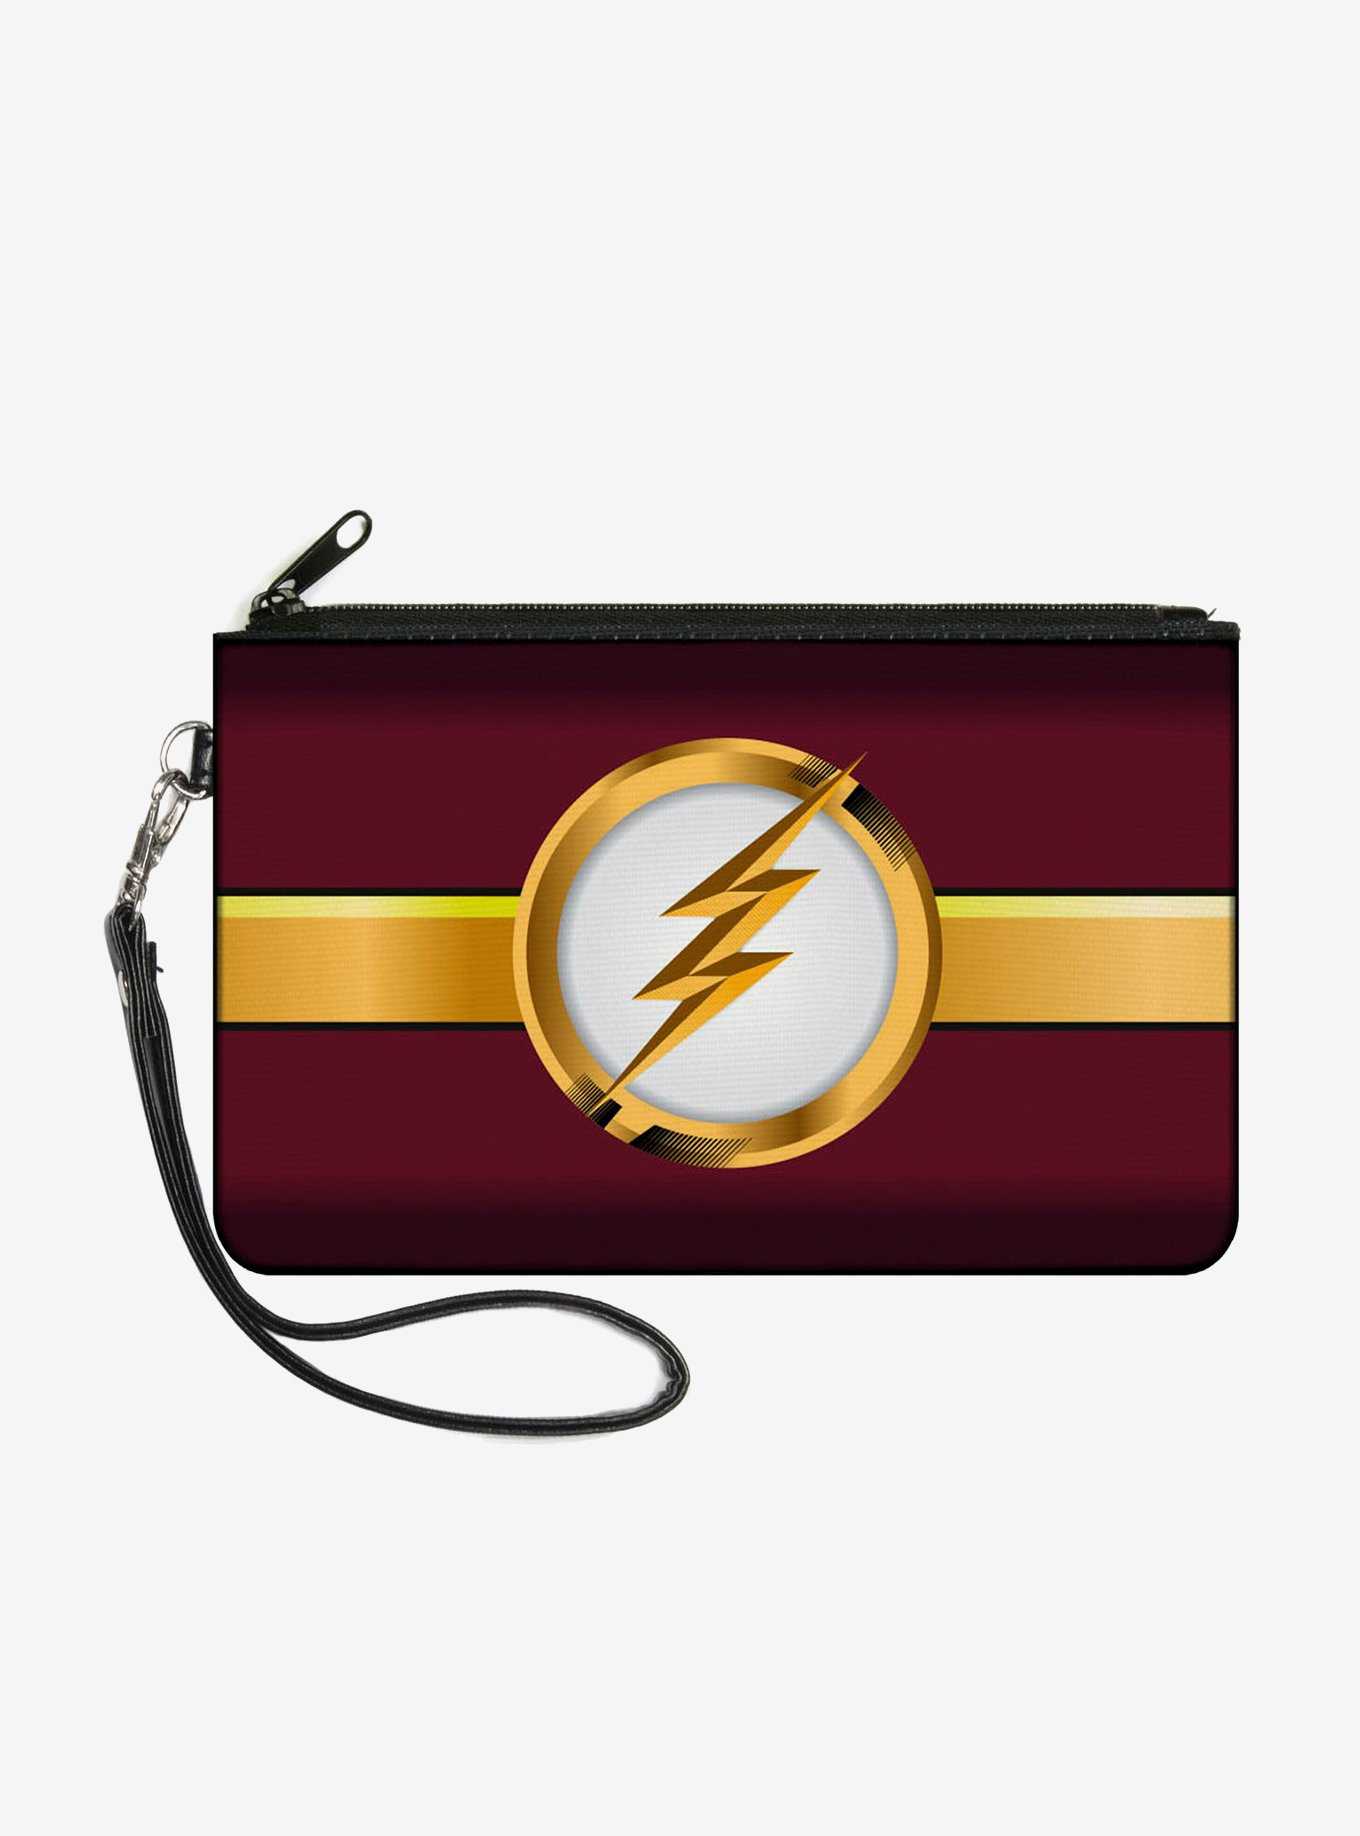 DC Comics The Flash Logo Stripe Wallet Canvas Zip Clutch, , hi-res